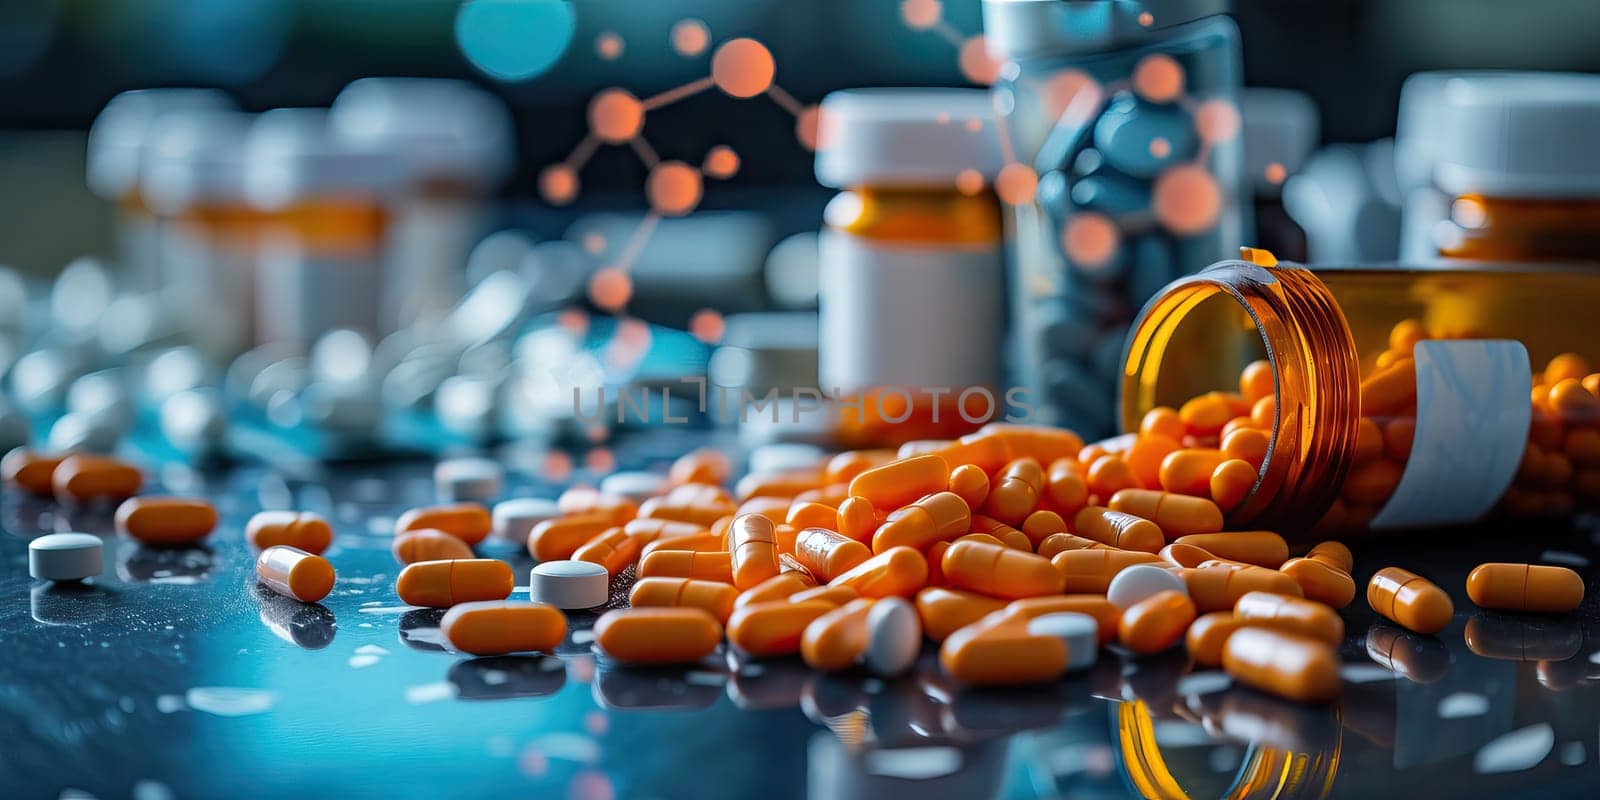 Orange pills spilling from bottle on dark surface